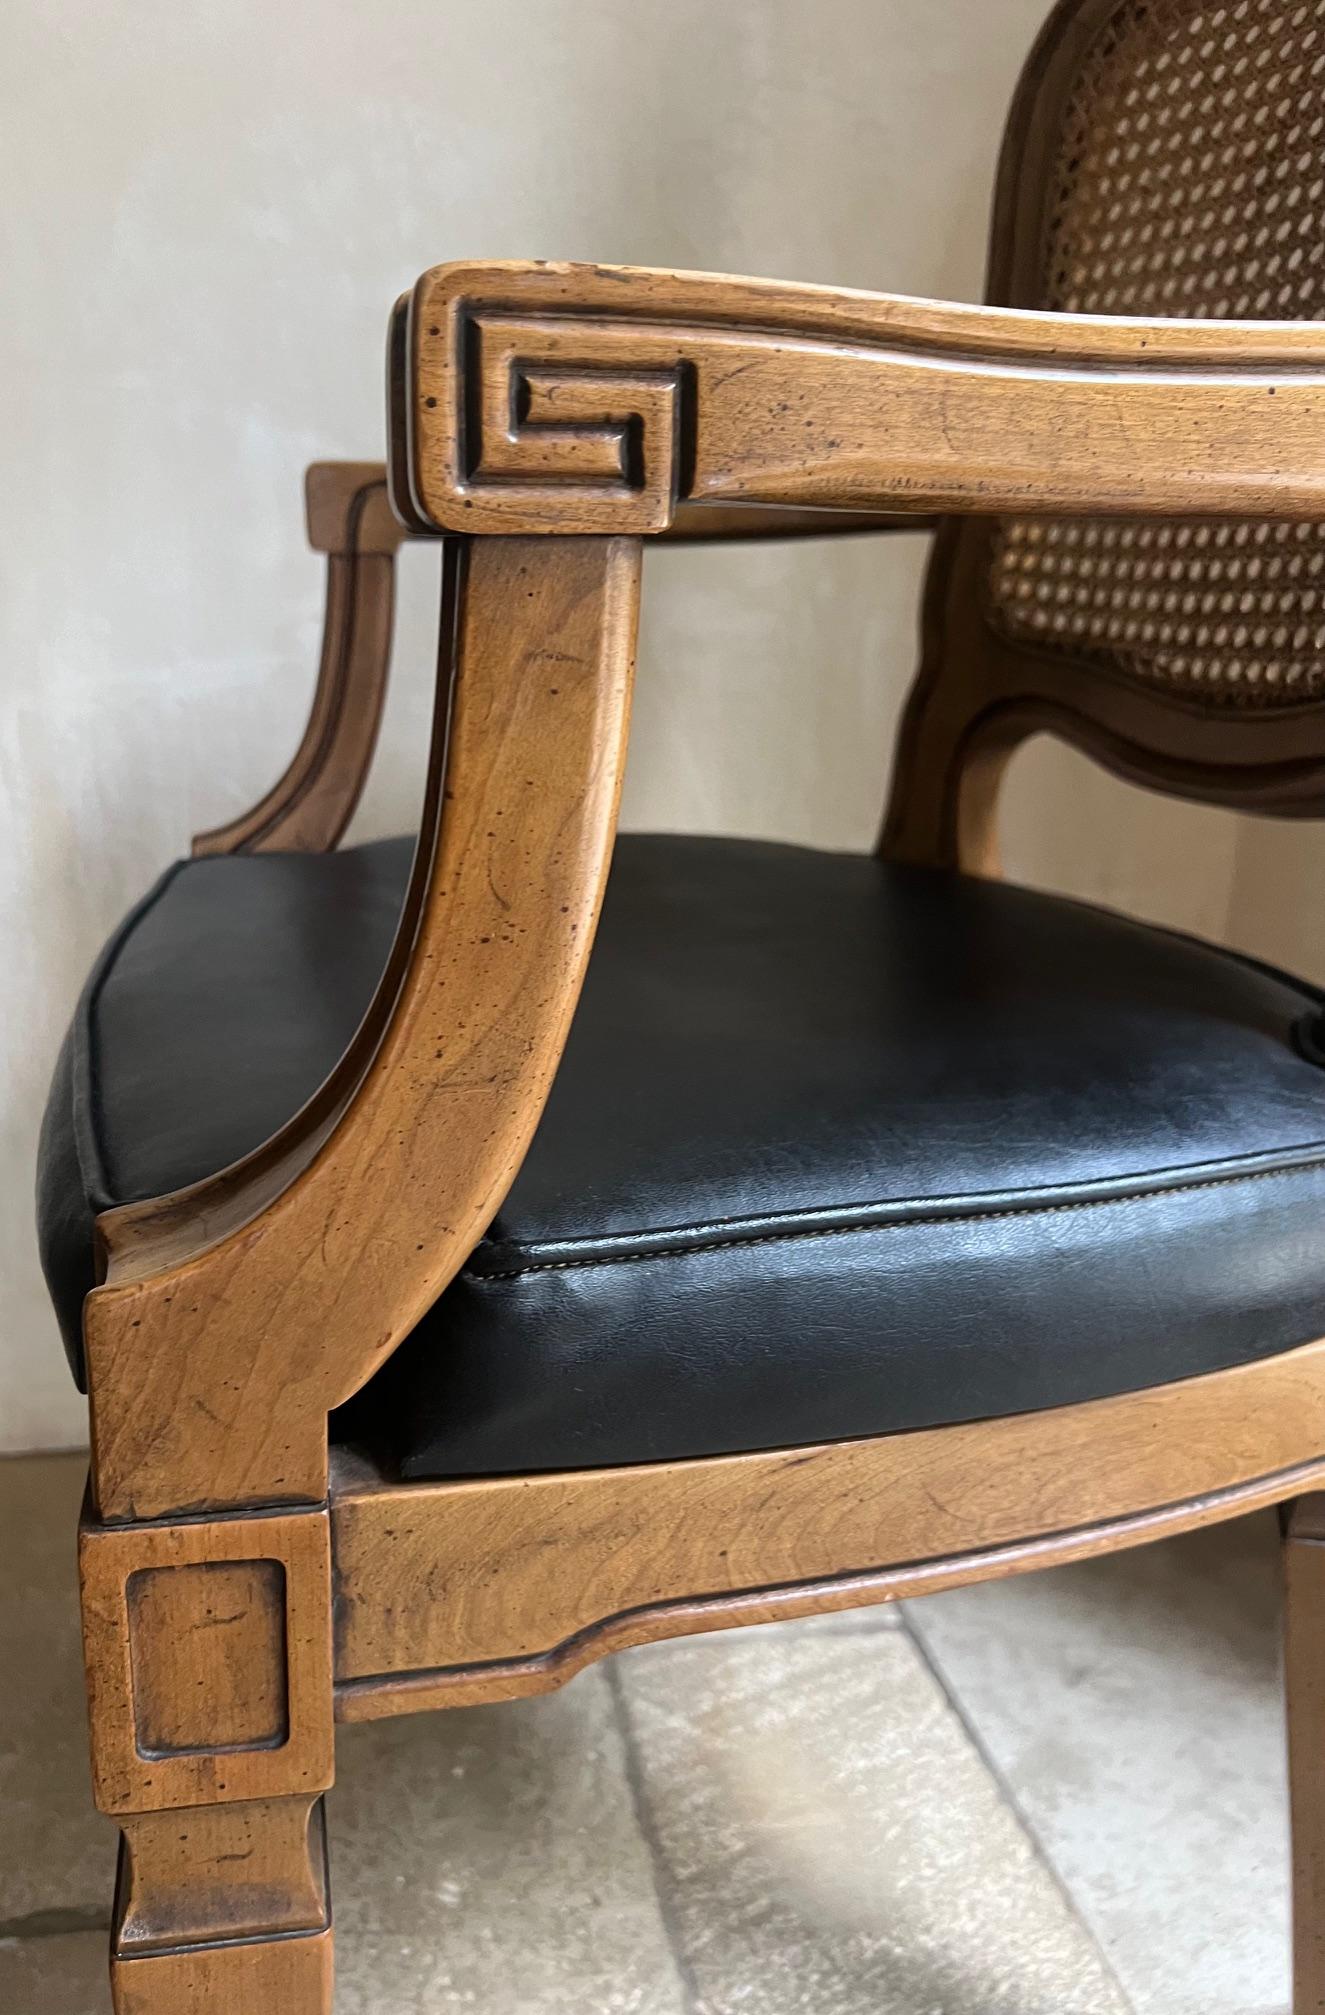 Vintage Französisch Land Schilfrohr zurück Sessel  Stuhl mit Kunstledersitz von Henredon, hergestellt in den 1960er Jahren.

Alle meine Möbel können in der San Francisco Bay Area kostenlos abgeholt werden.